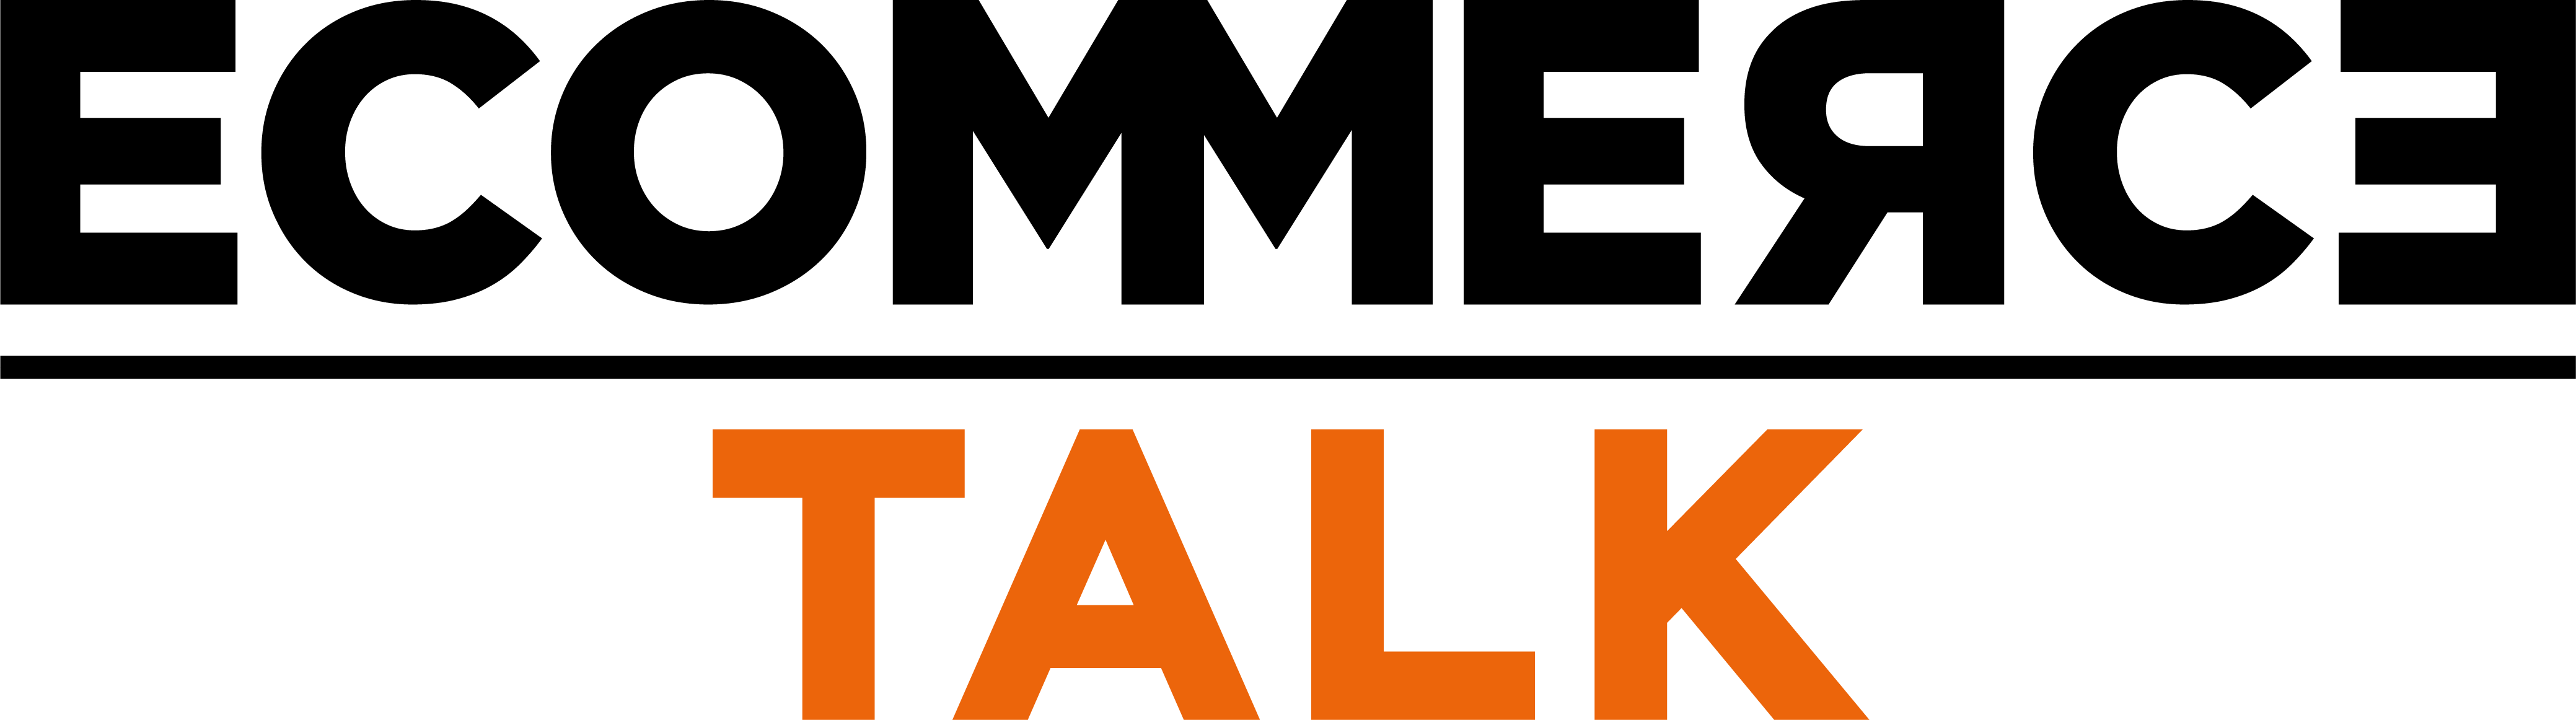 ecommerce-talk-logo